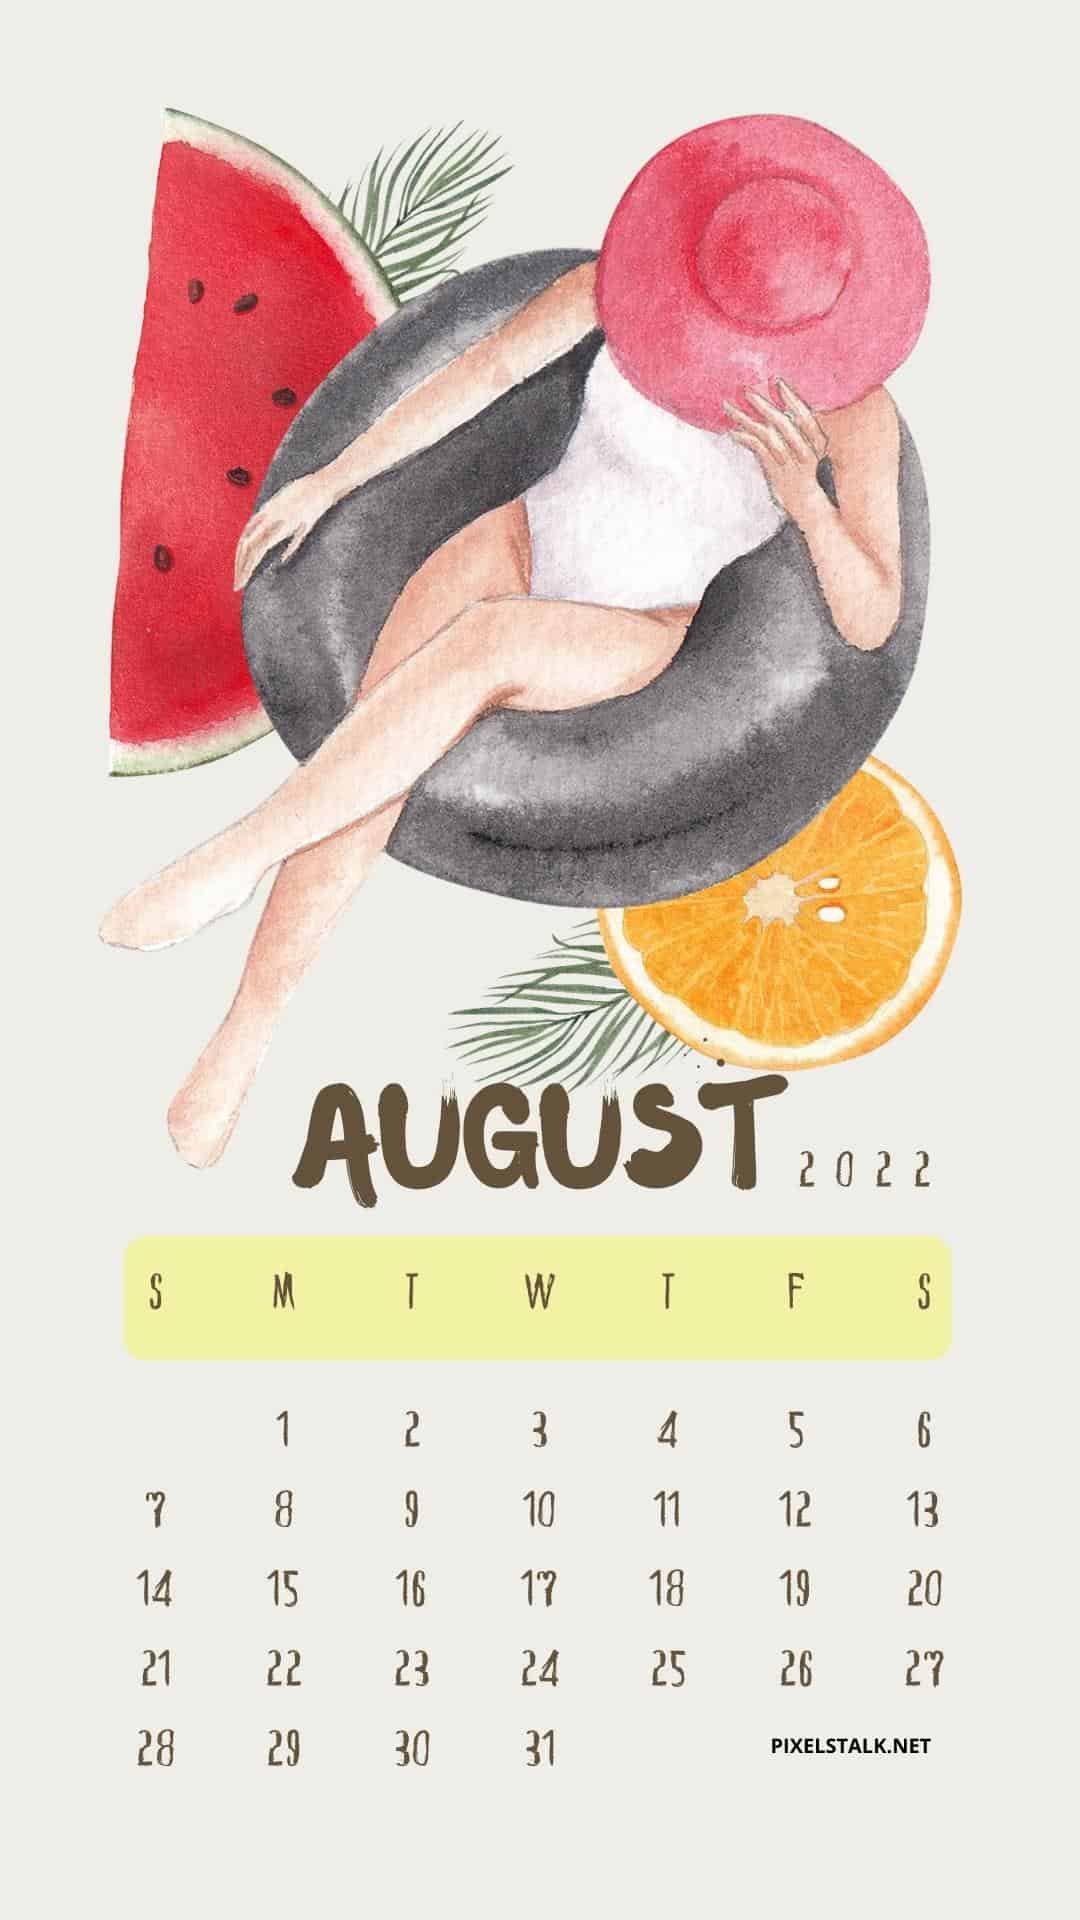 August 2022 iPhone Calendar Wallpaper